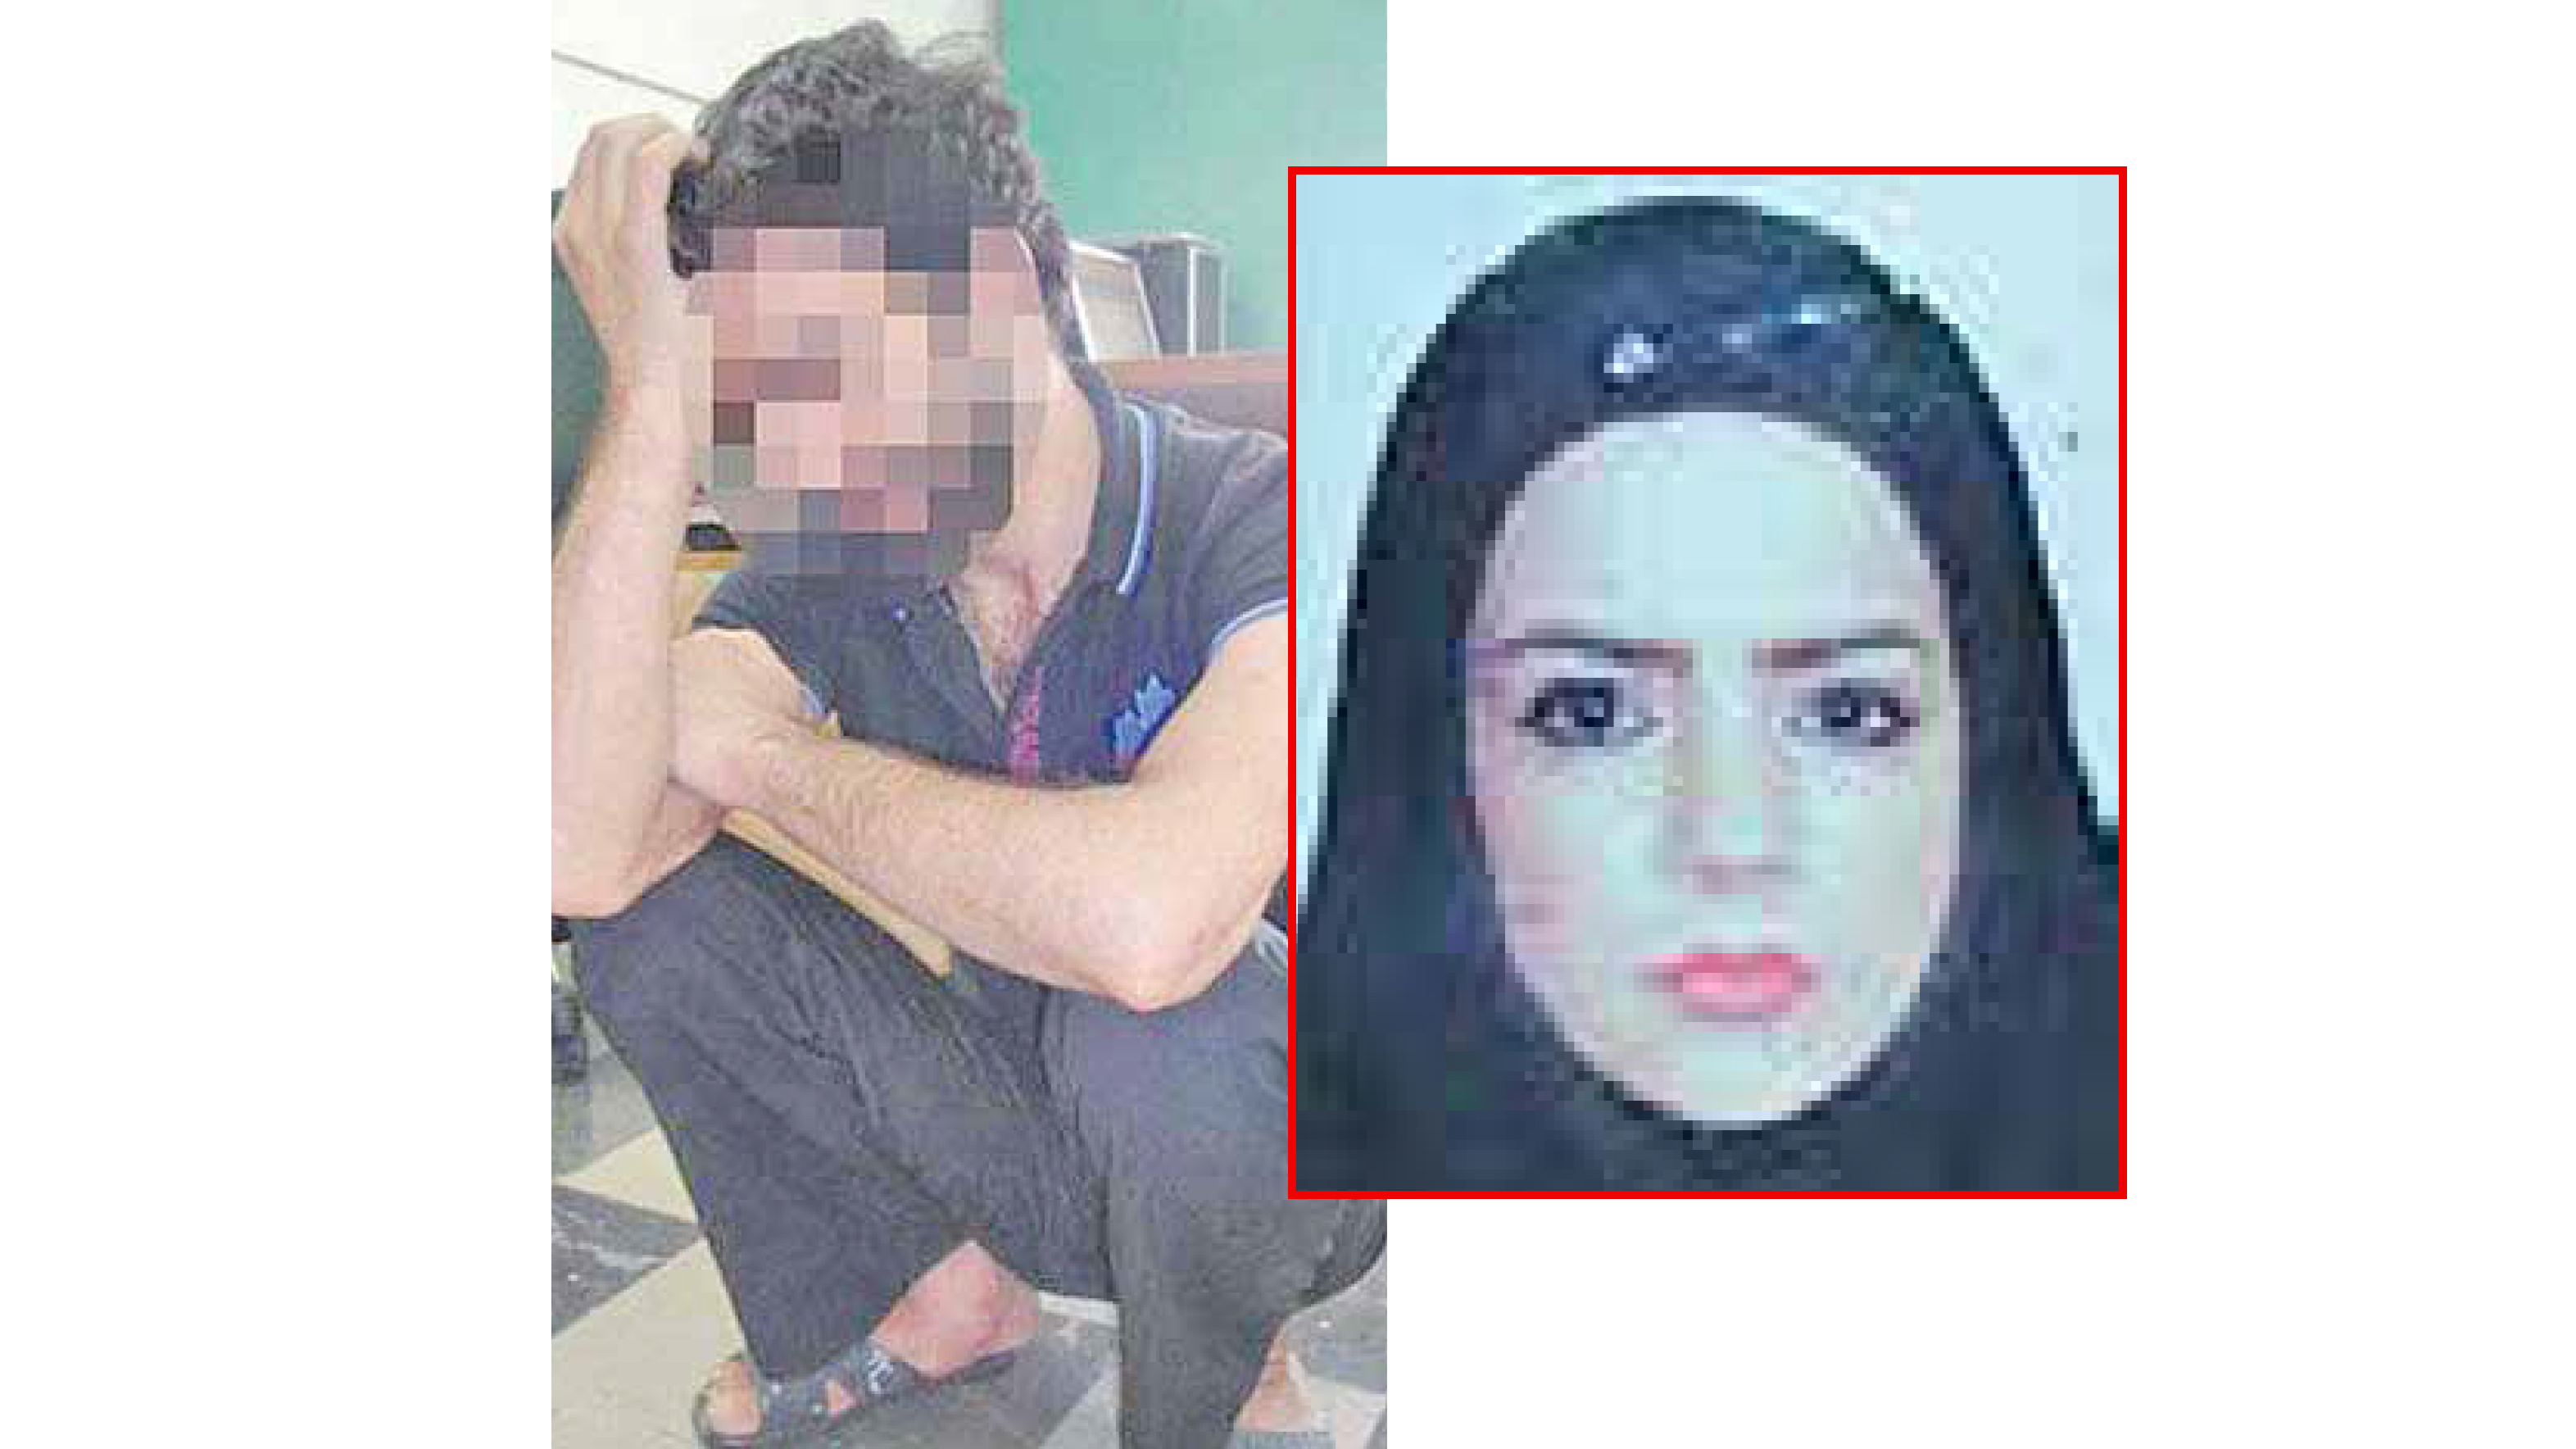 اقدام وحشتناک با نوعرس گرگانی در خیابان / حکم مرگ داماد تایید شد+عکس عروس و داماد